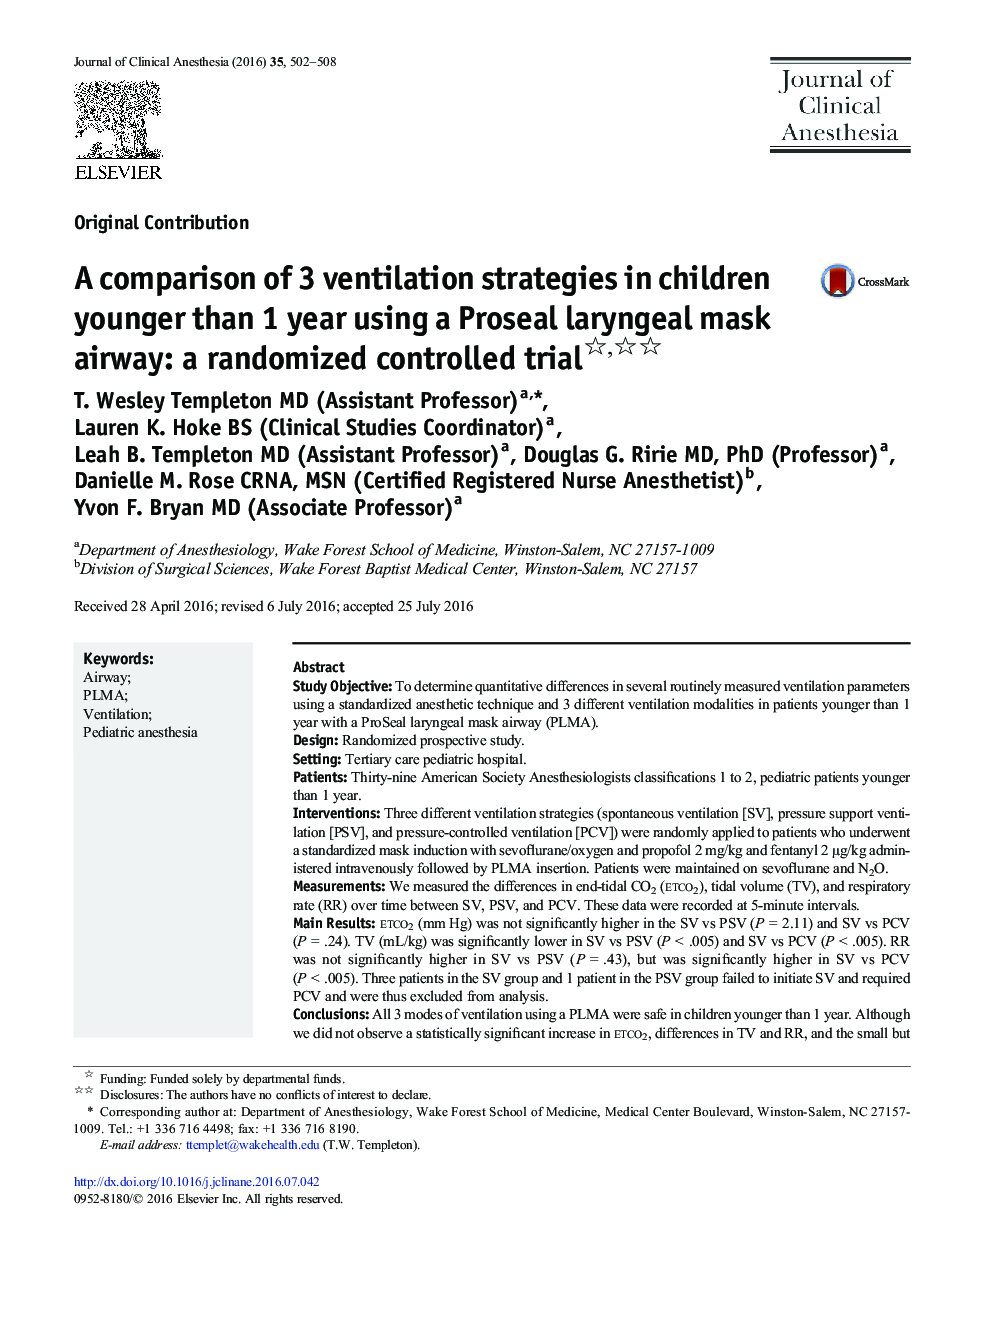 مقایسه سه استراتژی تهویه در کودکان کمتر از 1 سال با استفاده از یک راه هوایی ماسک حنجره پروزیال: یک کارآزمایی کنترل شده تصادفی 